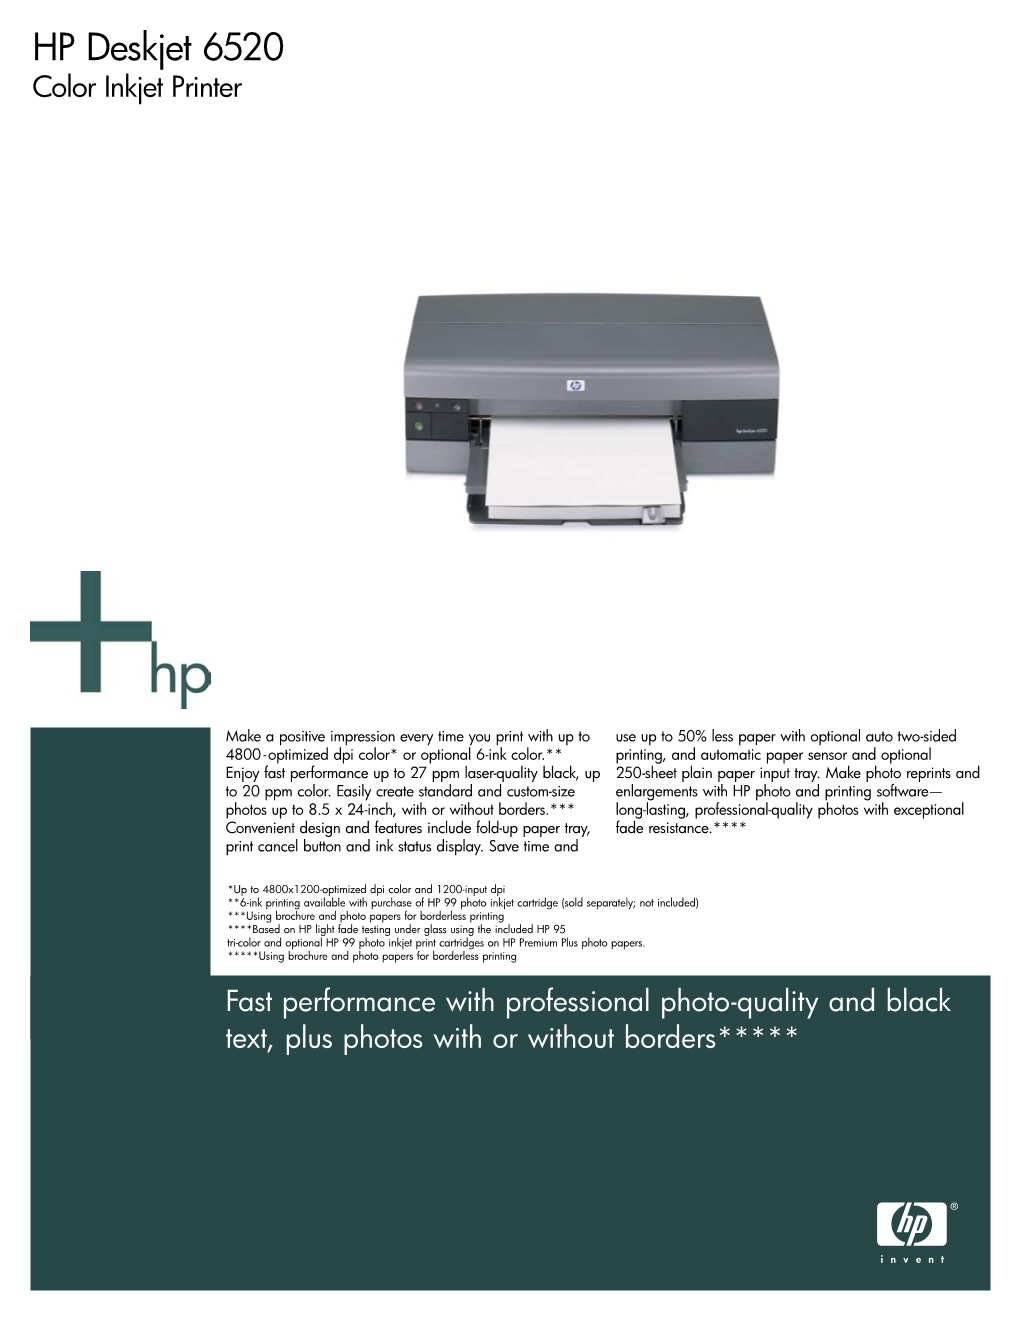 HP Deskjet 6520 Color Inkjet Printer